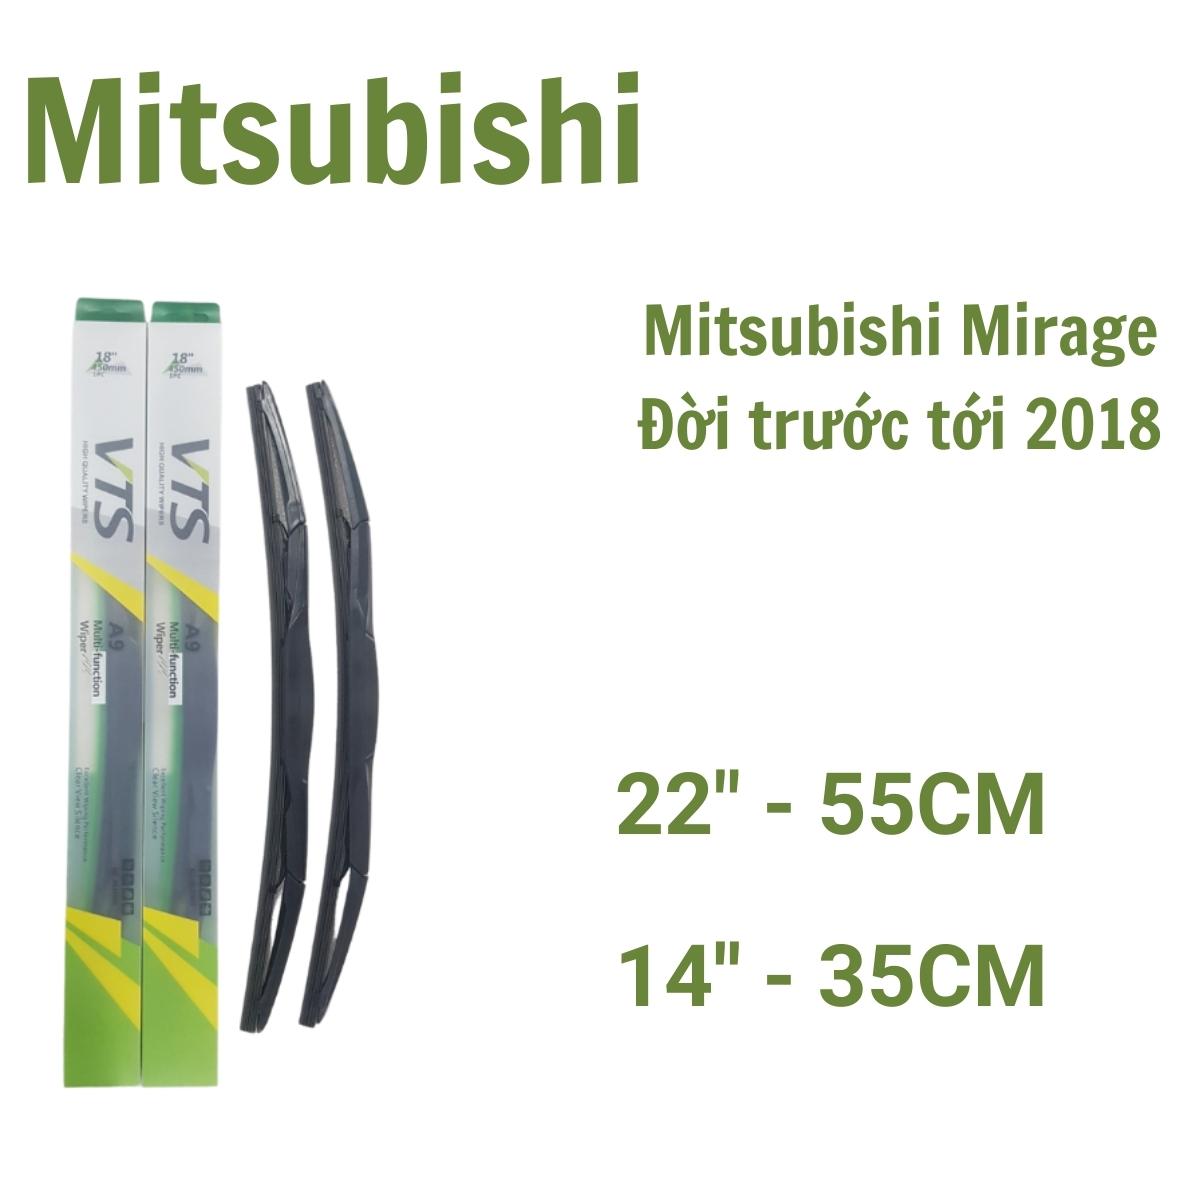 Cần gạt mưa ô tô thanh 3 khúc A9 dành cho xe Mitsubishi: Jolie, Mirage, Pajero và các xe khác của hãng Mitsubishi - Hàng nhập khẩu